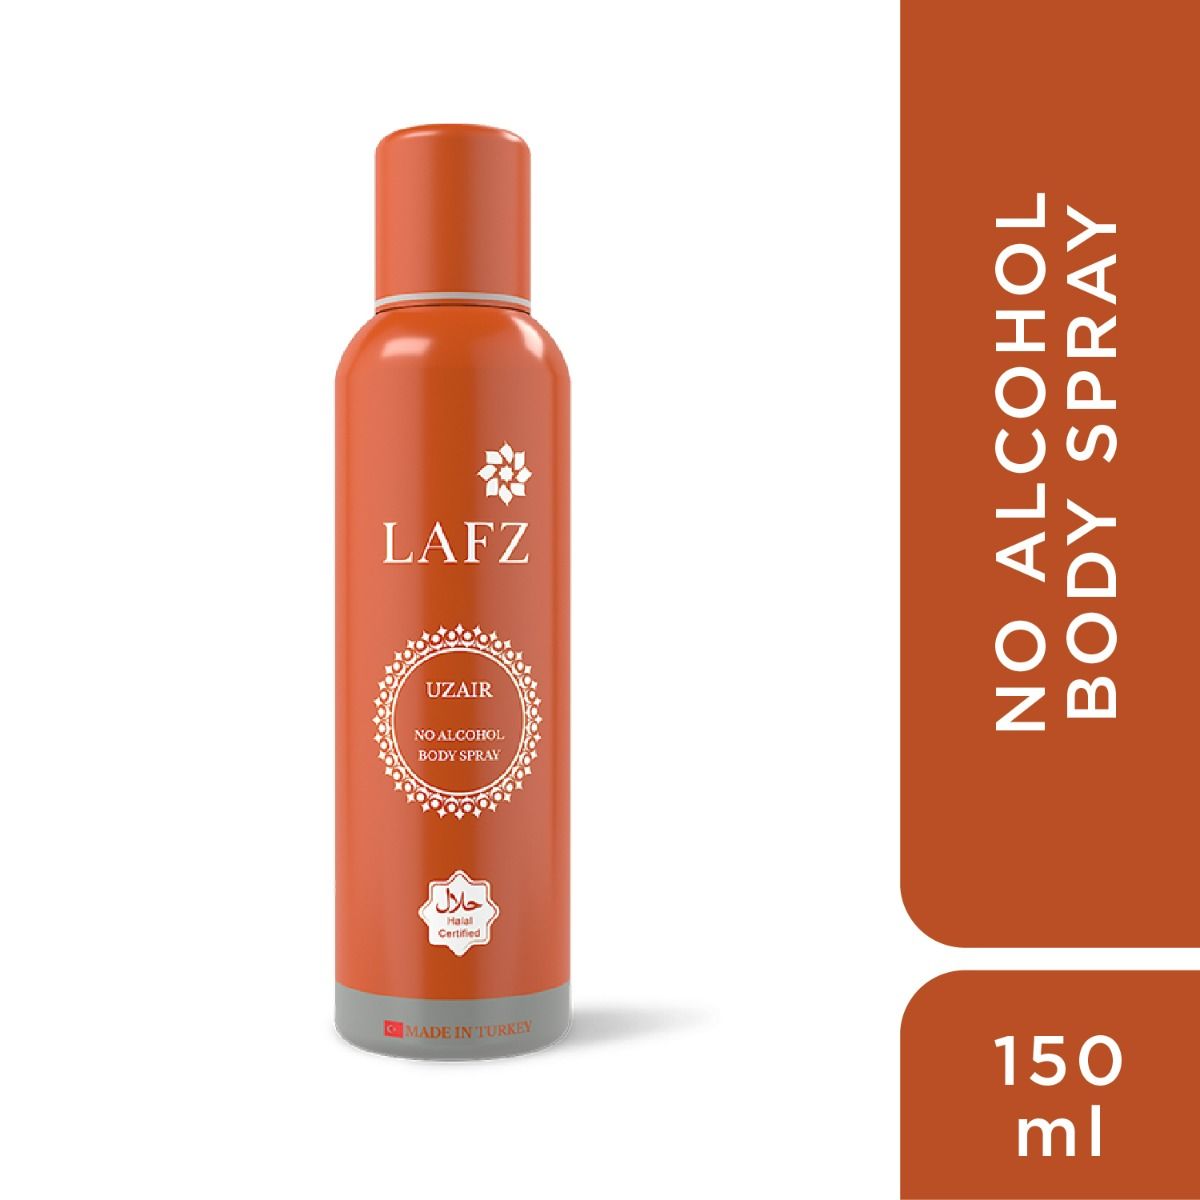 Lafz Uzair Body Spray for Men